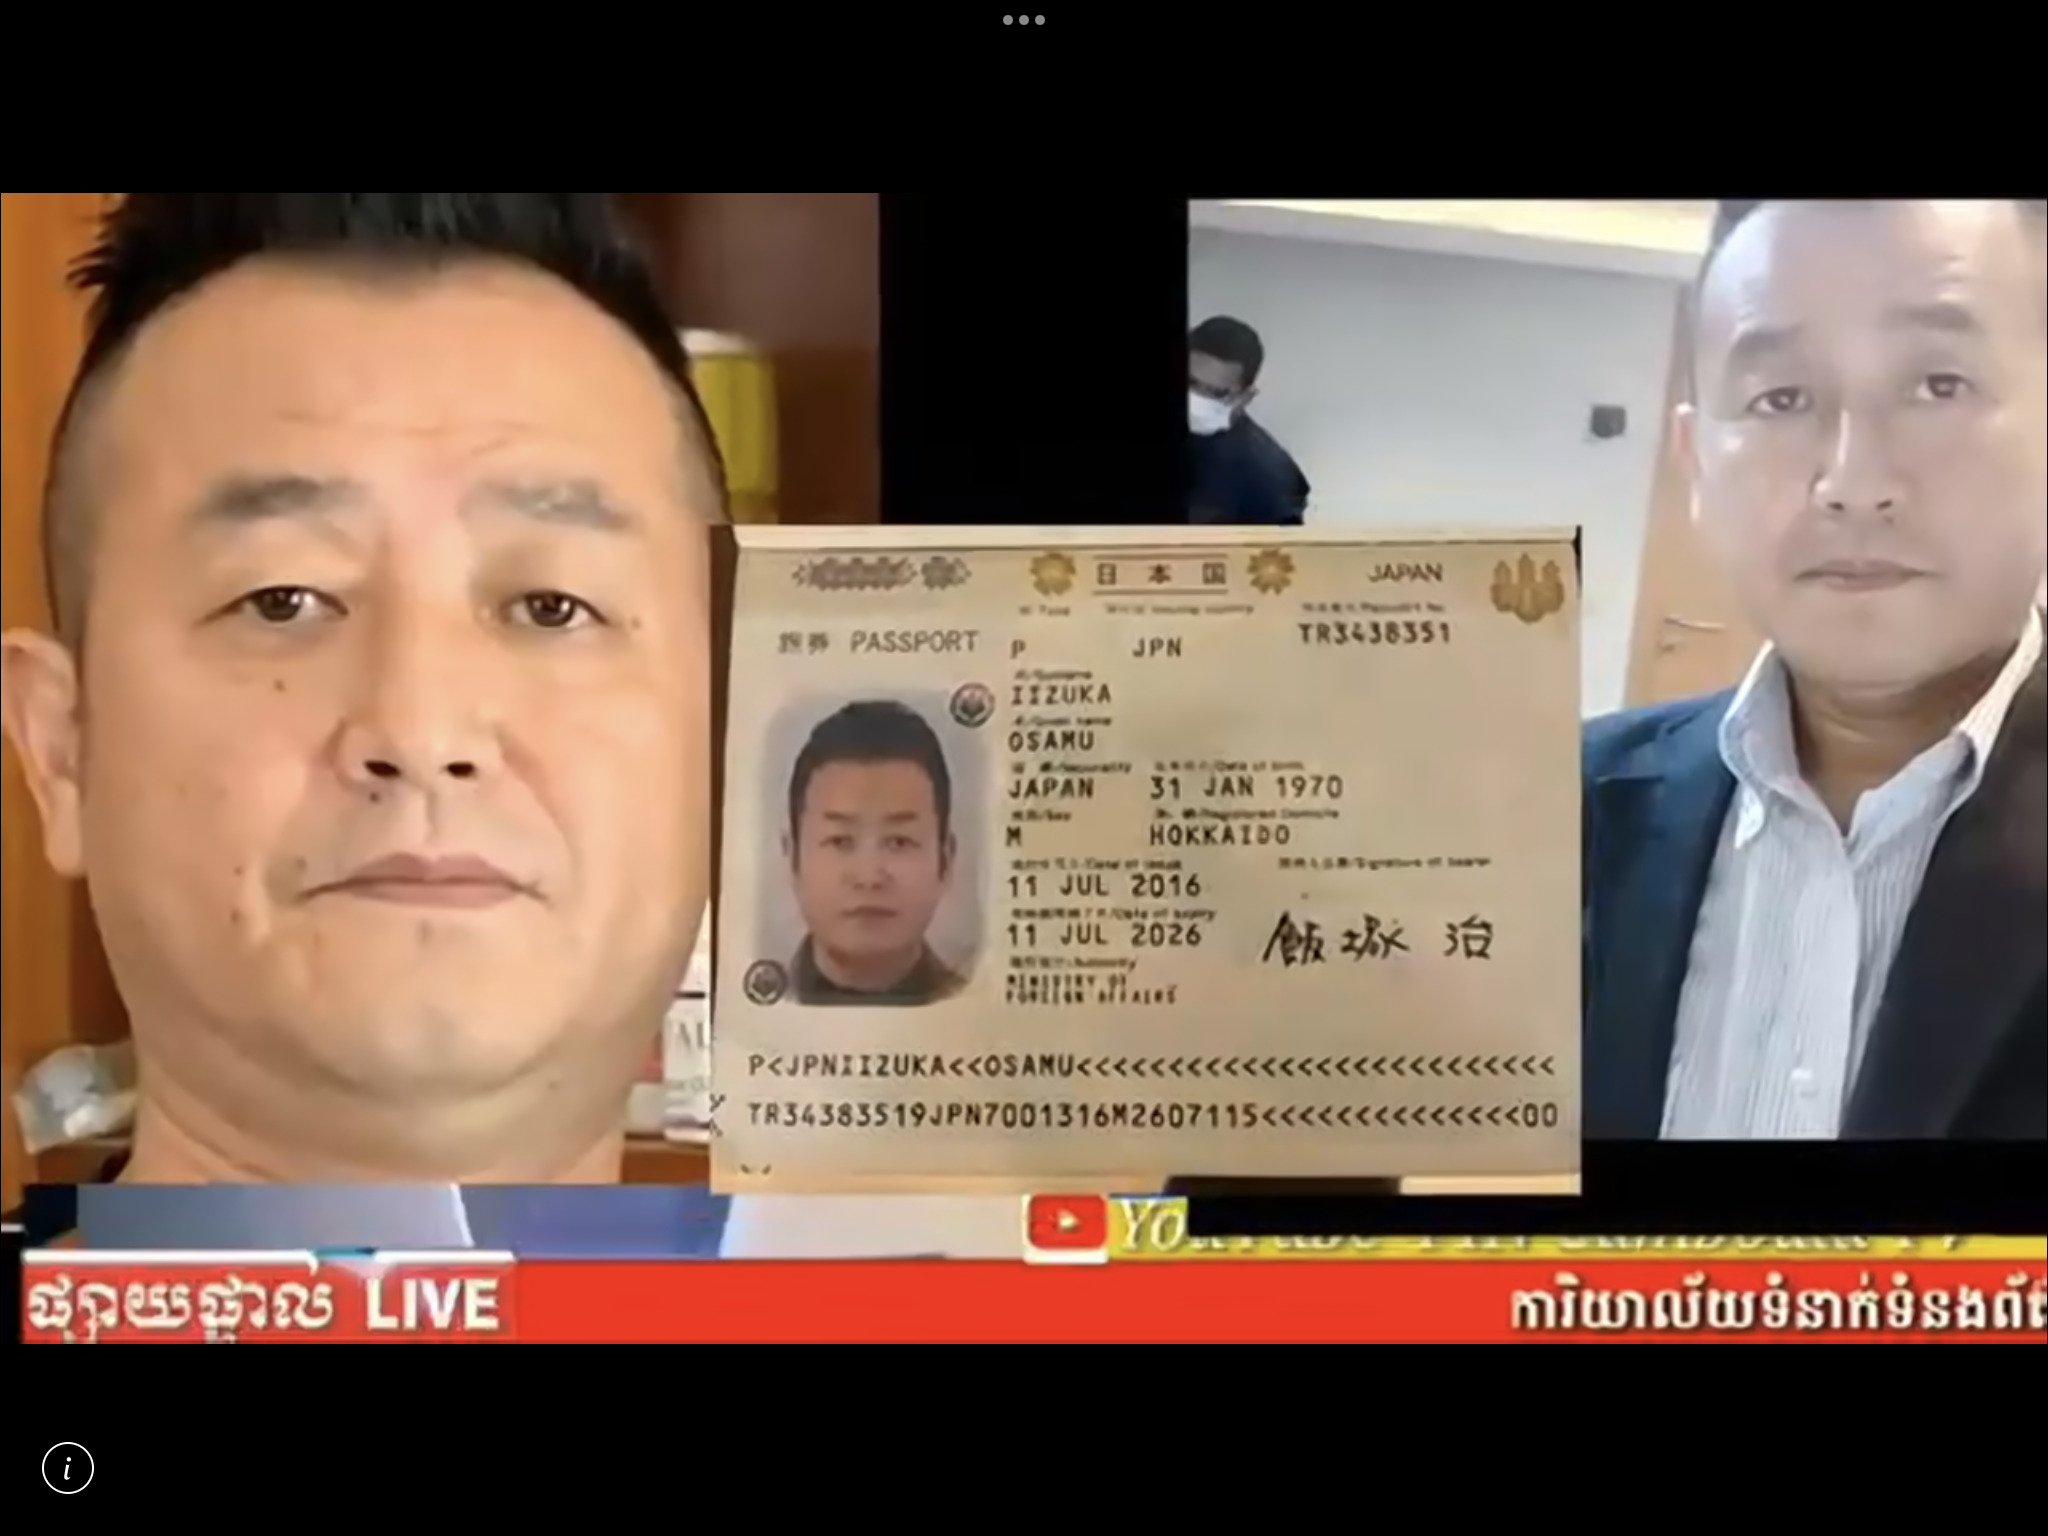 地元メディアニュース「この日本人詐欺師に注意せよ」と報道　現在、逃亡中